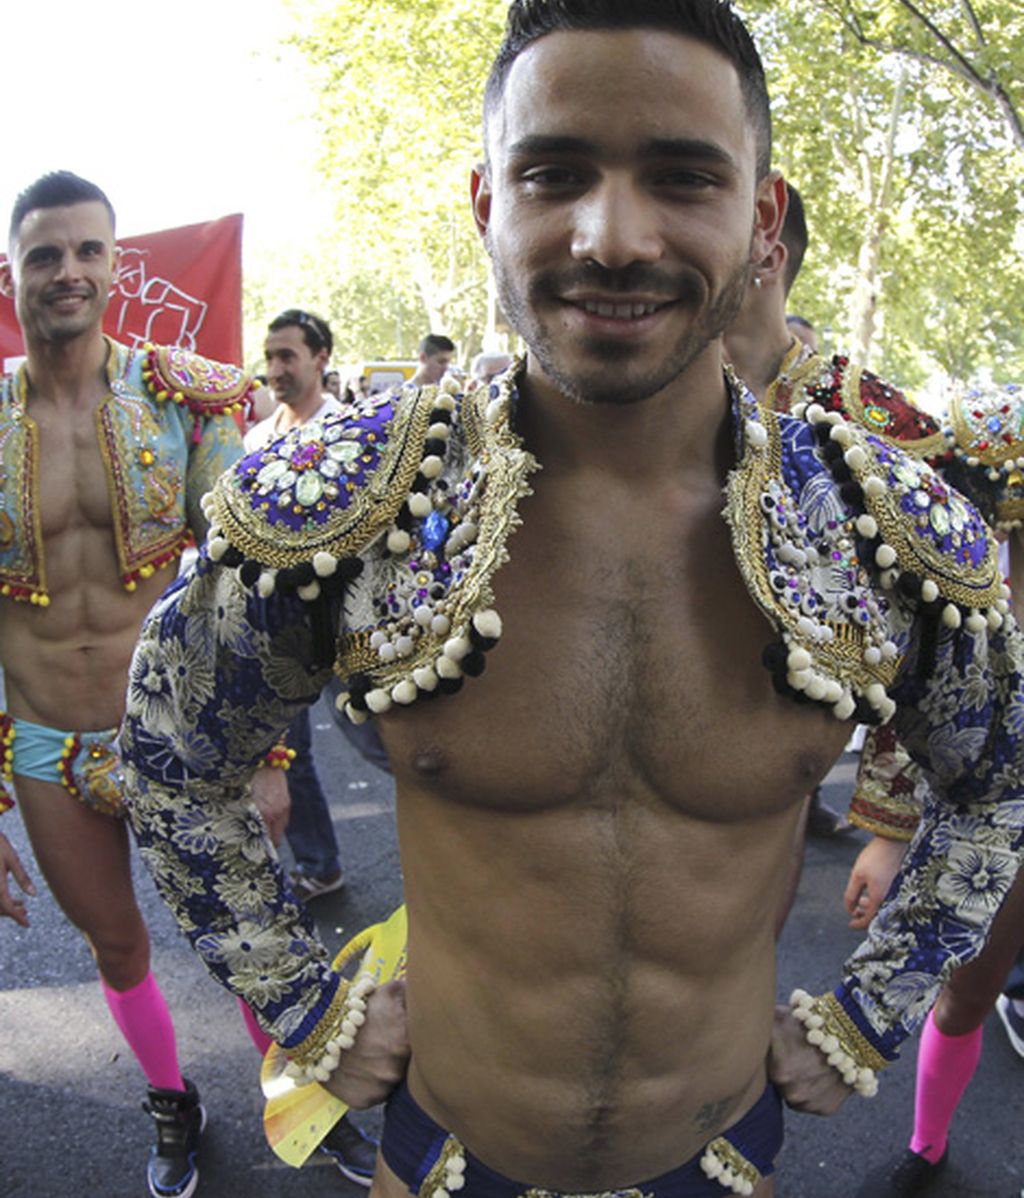 Ambiente festivo y reivindicativo en el Orgullo Gay